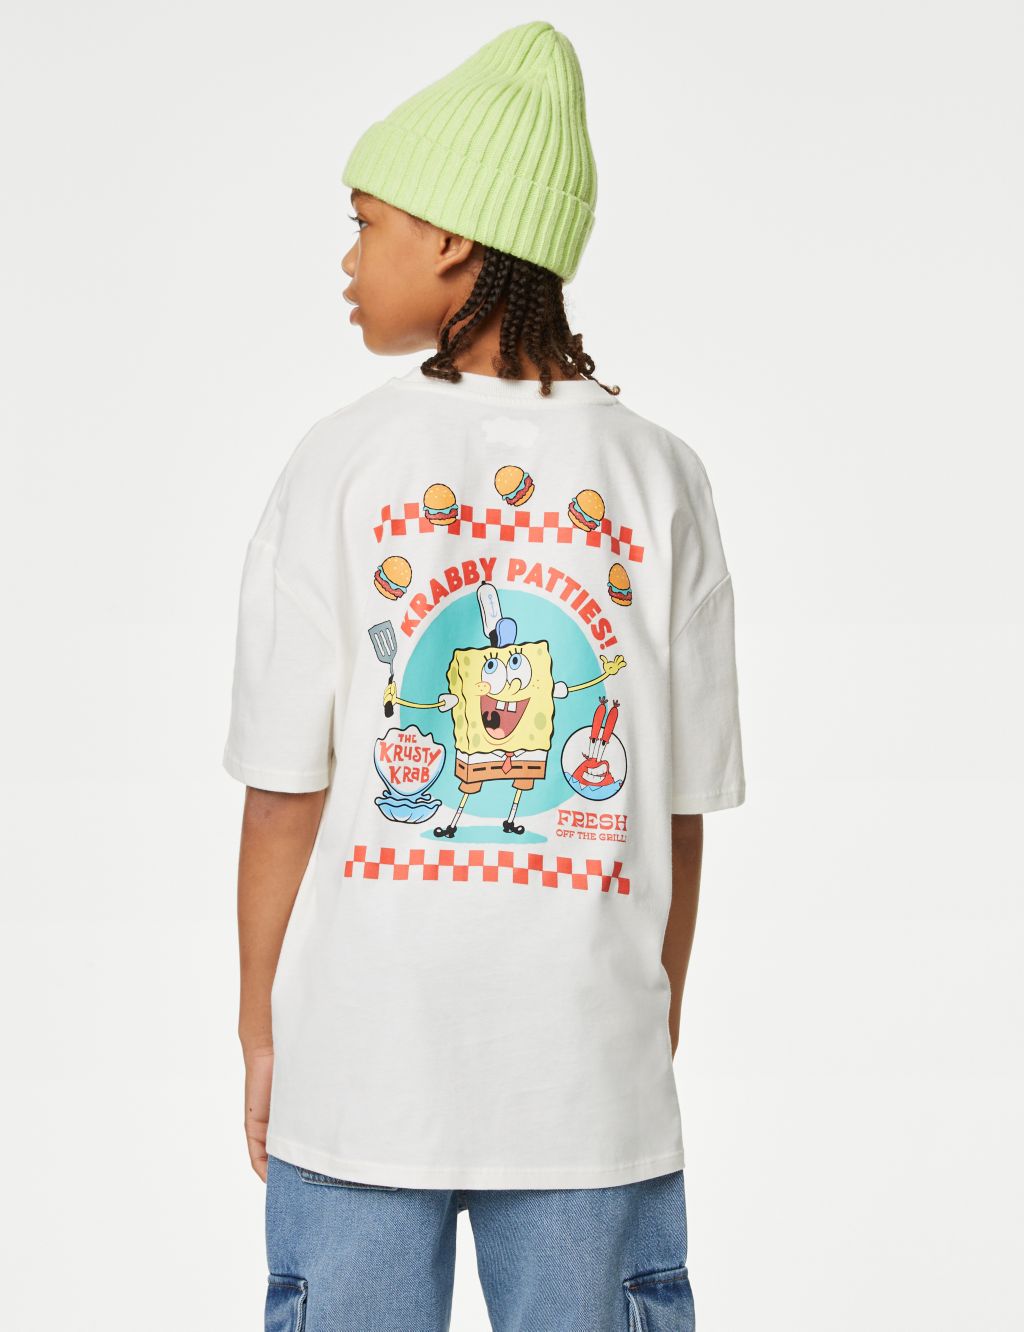 Pure Cotton SpongeBob SquarePants™ T-Shirt (6-16 Yrs)